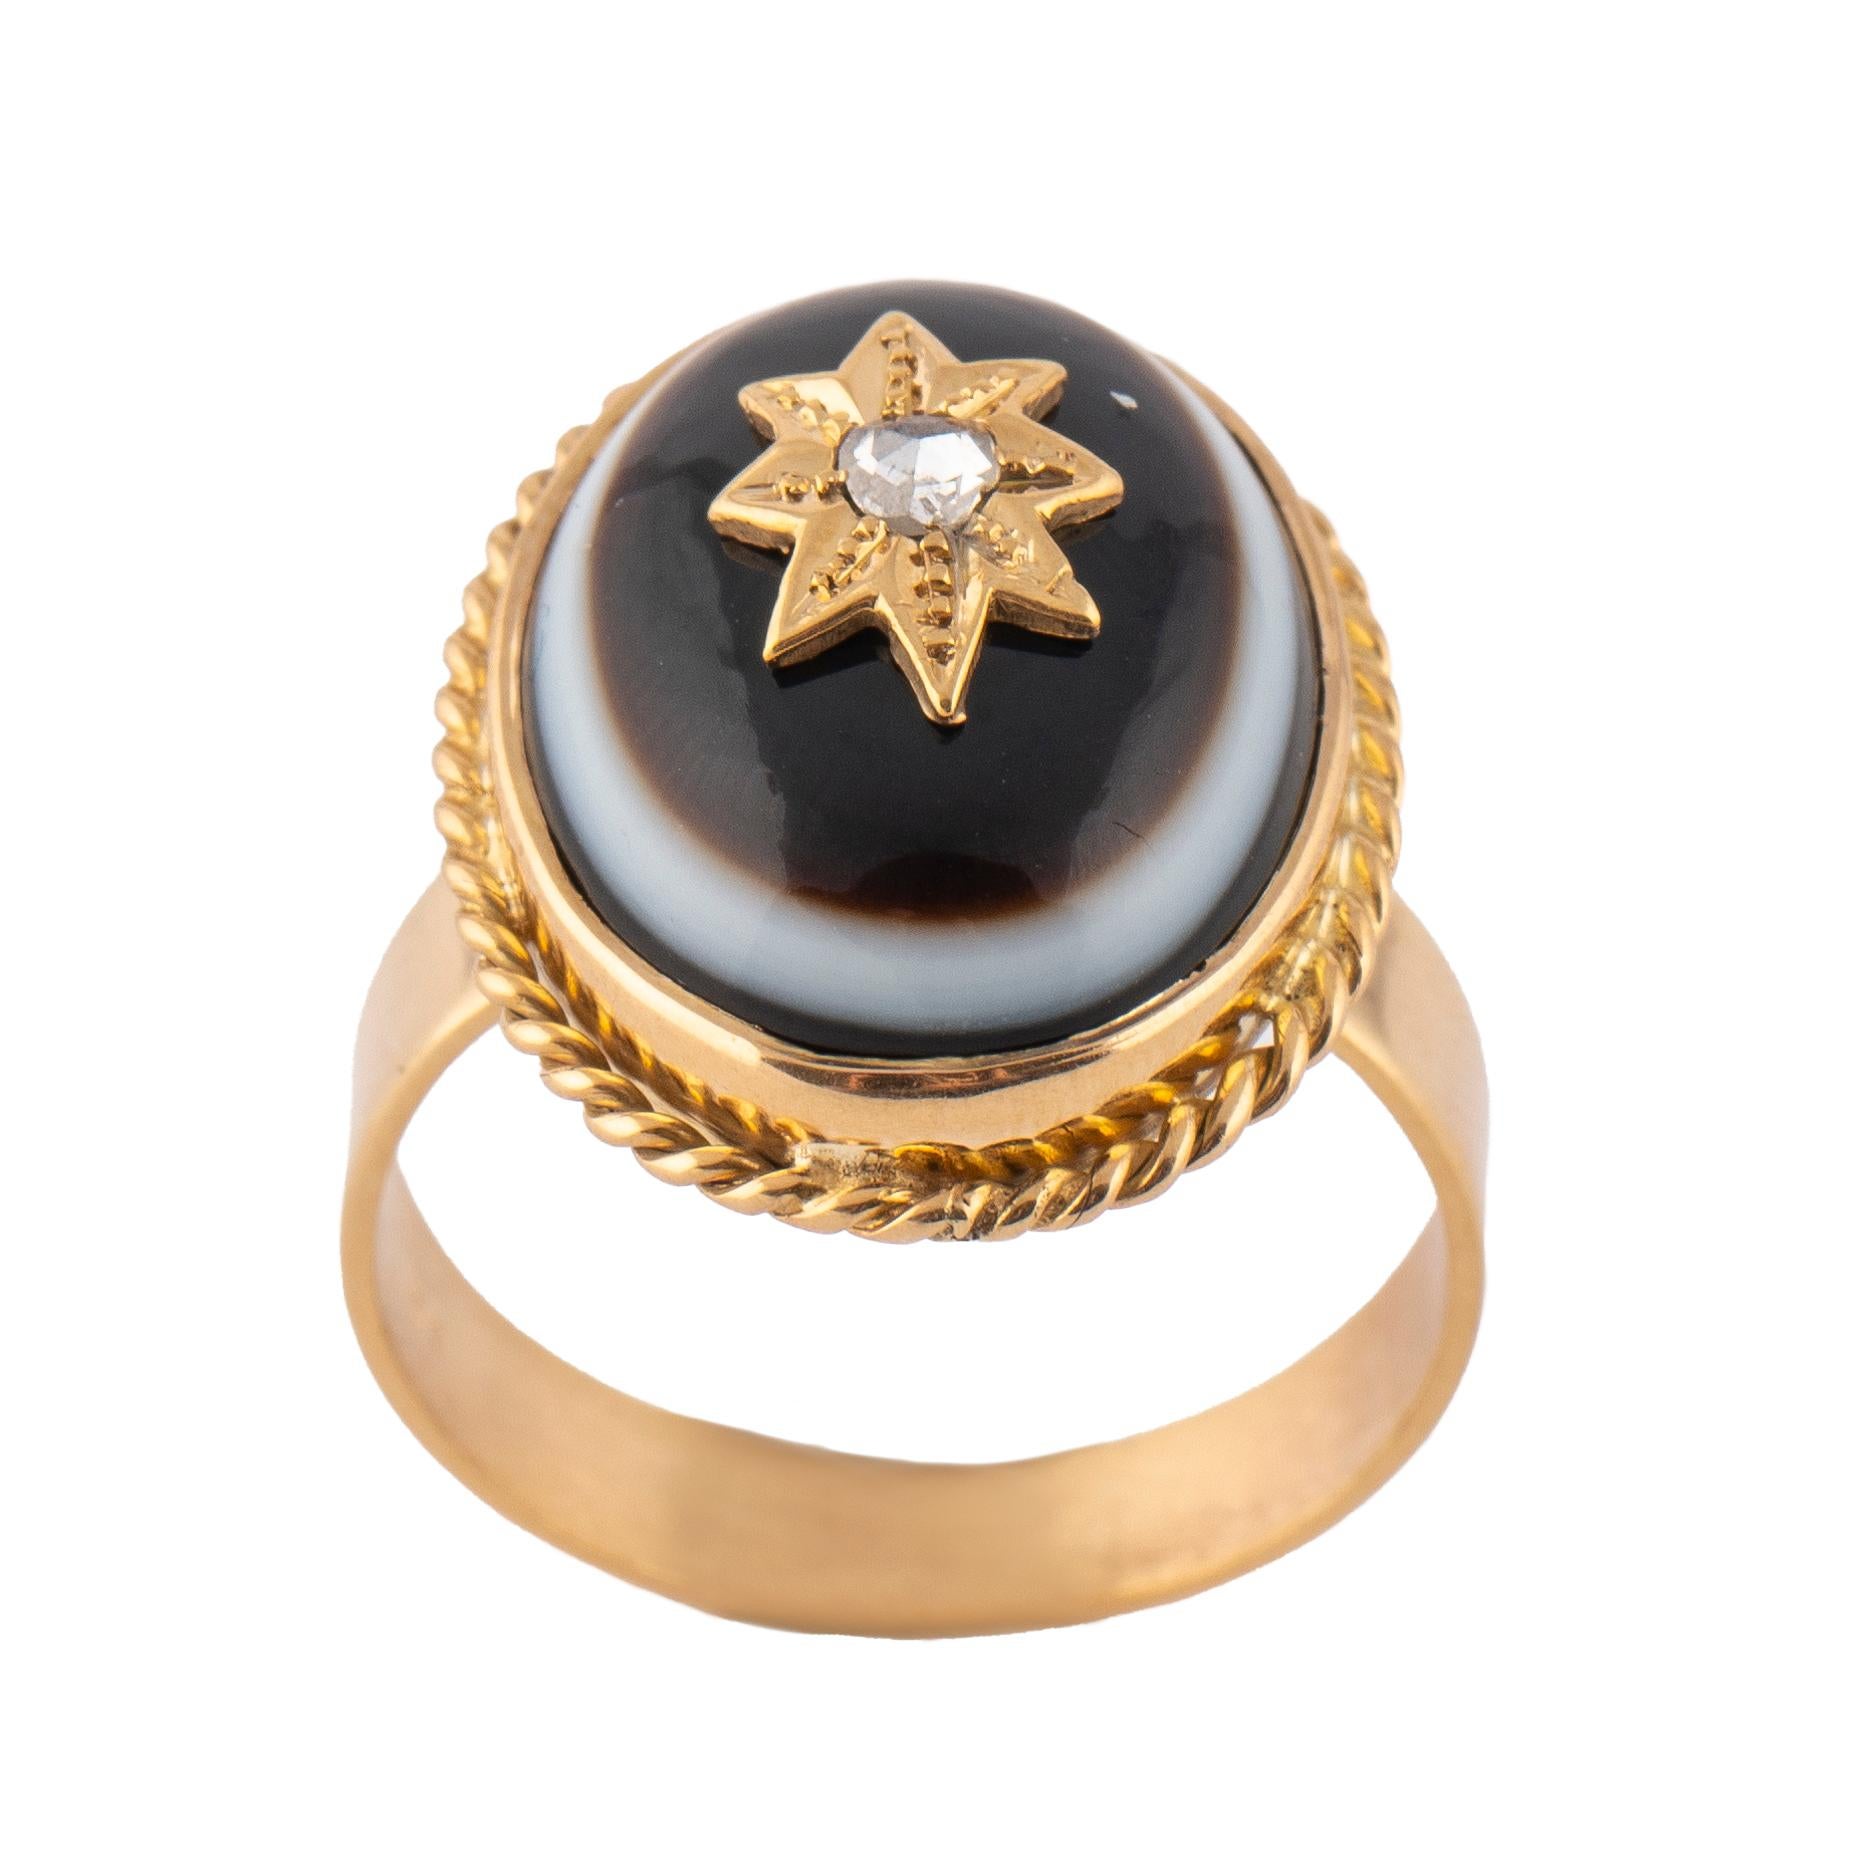 Dieser Ring aus 14-karätigem Gelbgold ist mit einem ovalen spätviktorianischen Stieraugen-Achat besetzt, der von einem Diamanten im Rosenschliff auf einem goldenen Sternmotiv in einer gedrehten Tauwerk-Bordüre zentriert wird.

Ovale Lünette: 2,2 cm